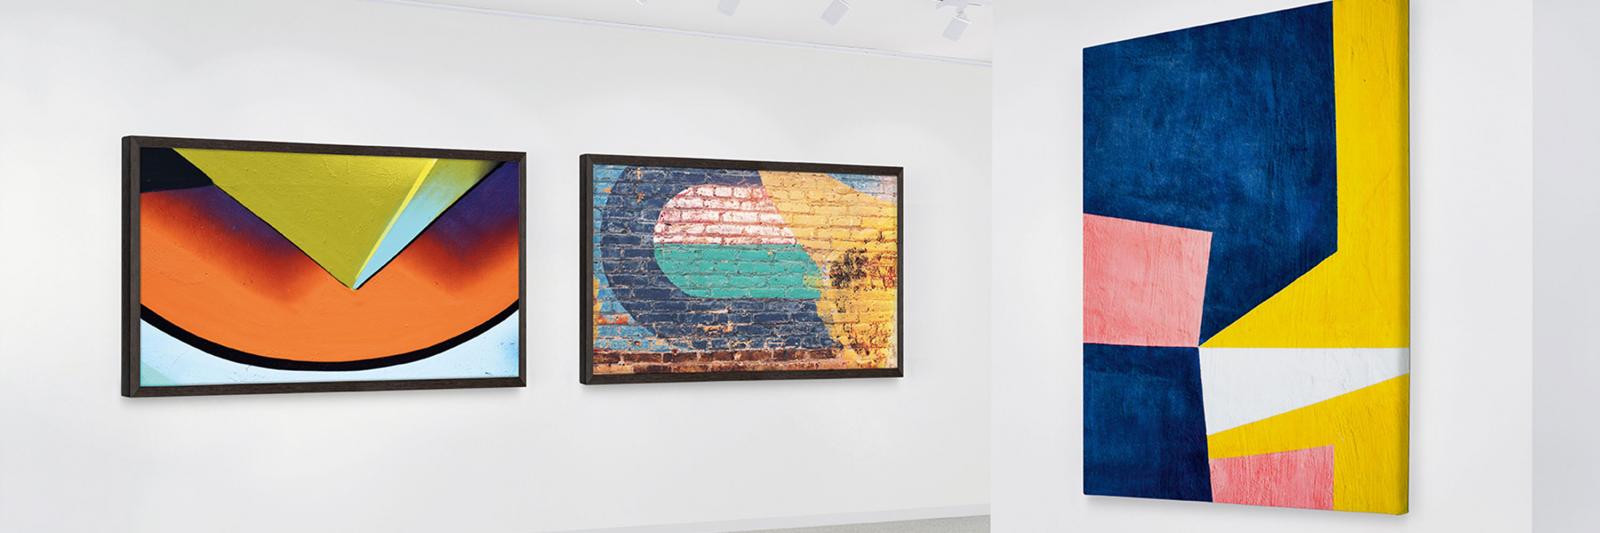 Photo und Art, bedruckbare Künsterleinwände und Fotopapiere drei farbige Kunstreproduktionen an der Wand einer Galerie